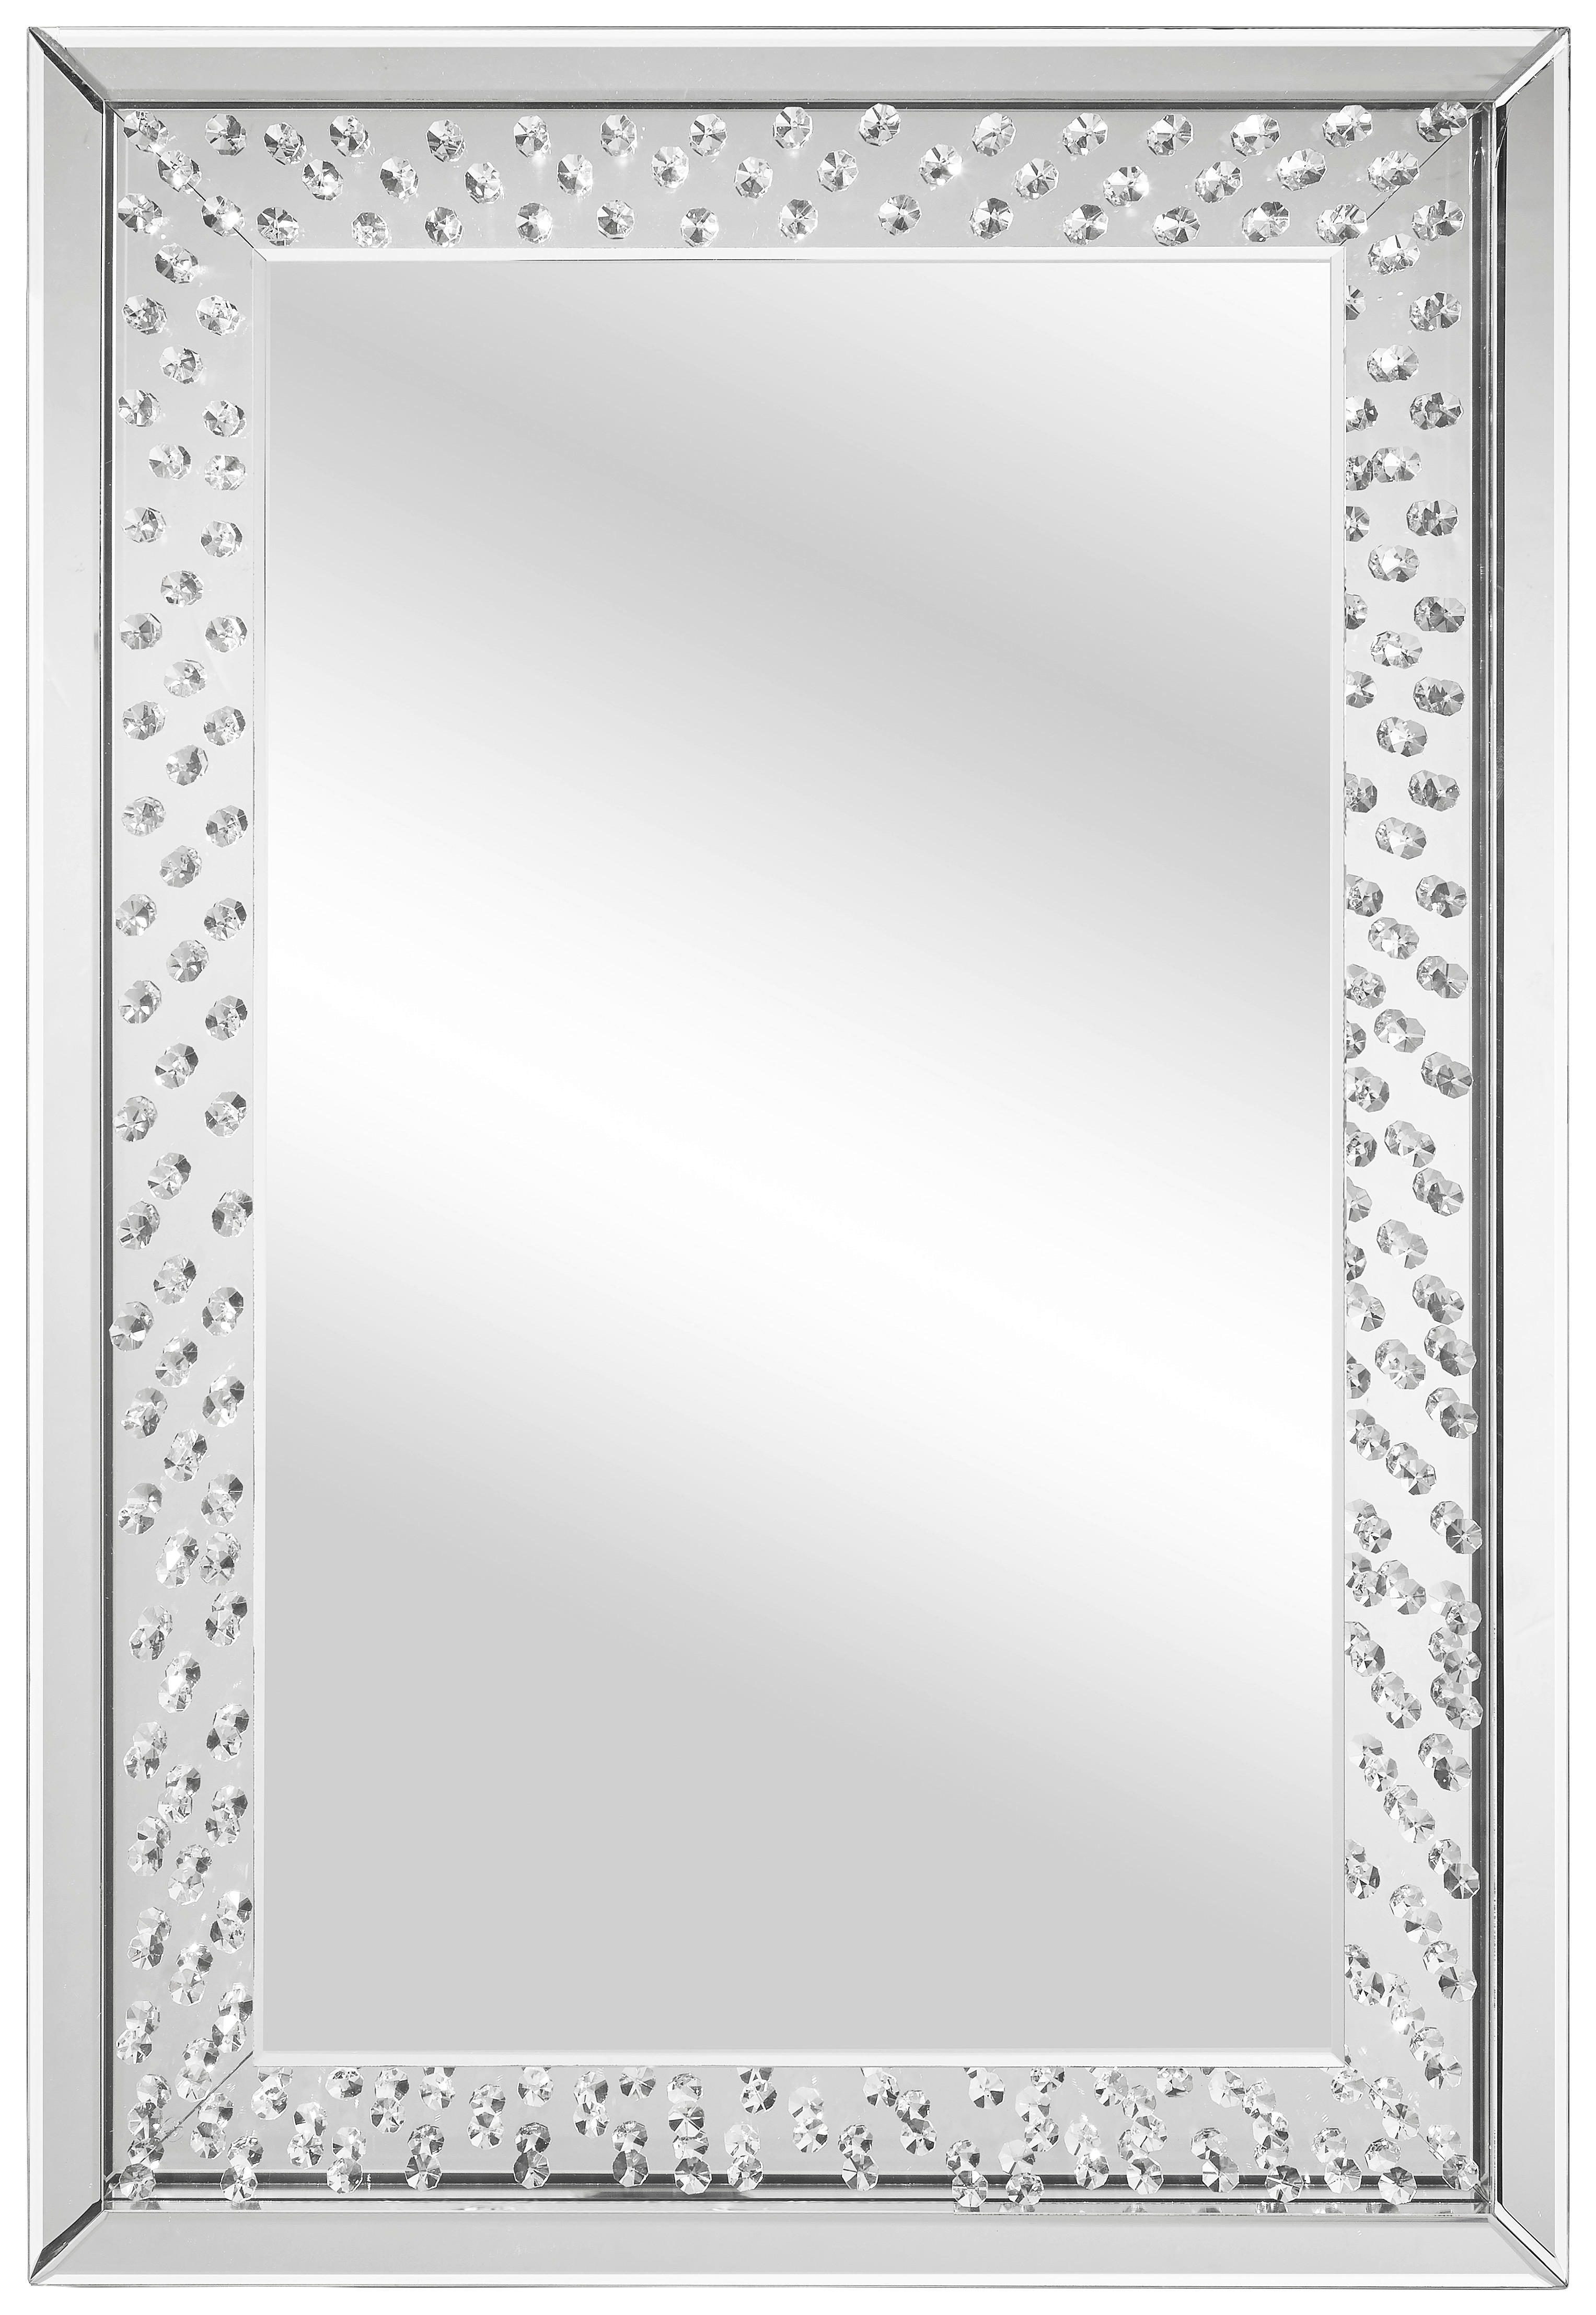 Xora NÁSTĚNNÉ ZRCADLO 60/90/5 cm - barvy stříbra